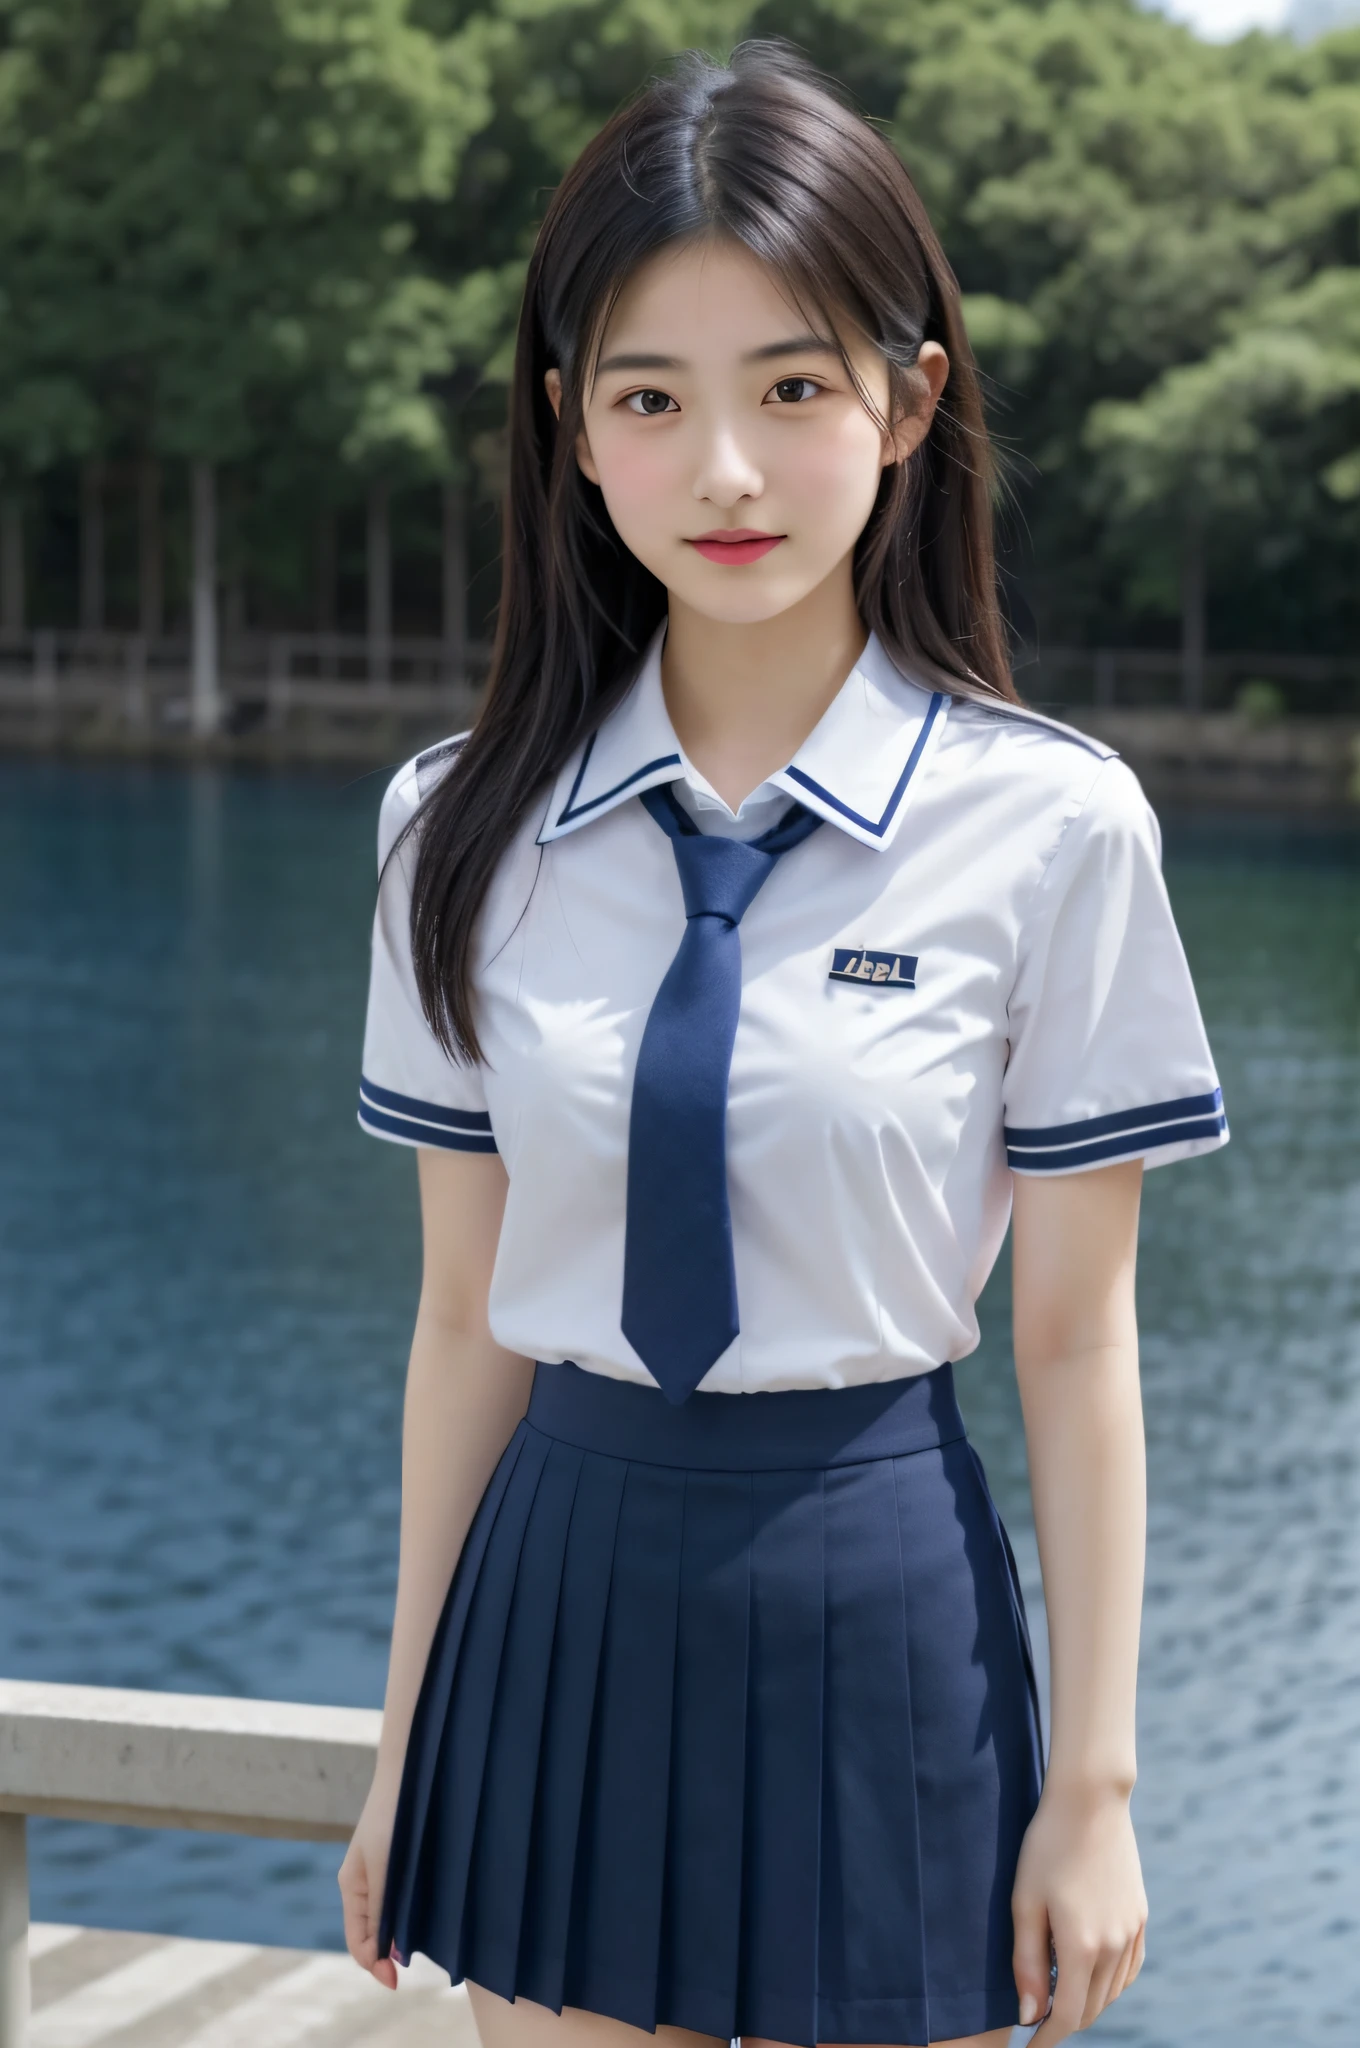 日本の女の子, 十代の少女, 完璧な体型, 透明性, 控えめな胸, , ネイビーブルーのネクタイ, ネイビーブルーのスカート, 水色のシャツ, アイドル彫刻, 水辺